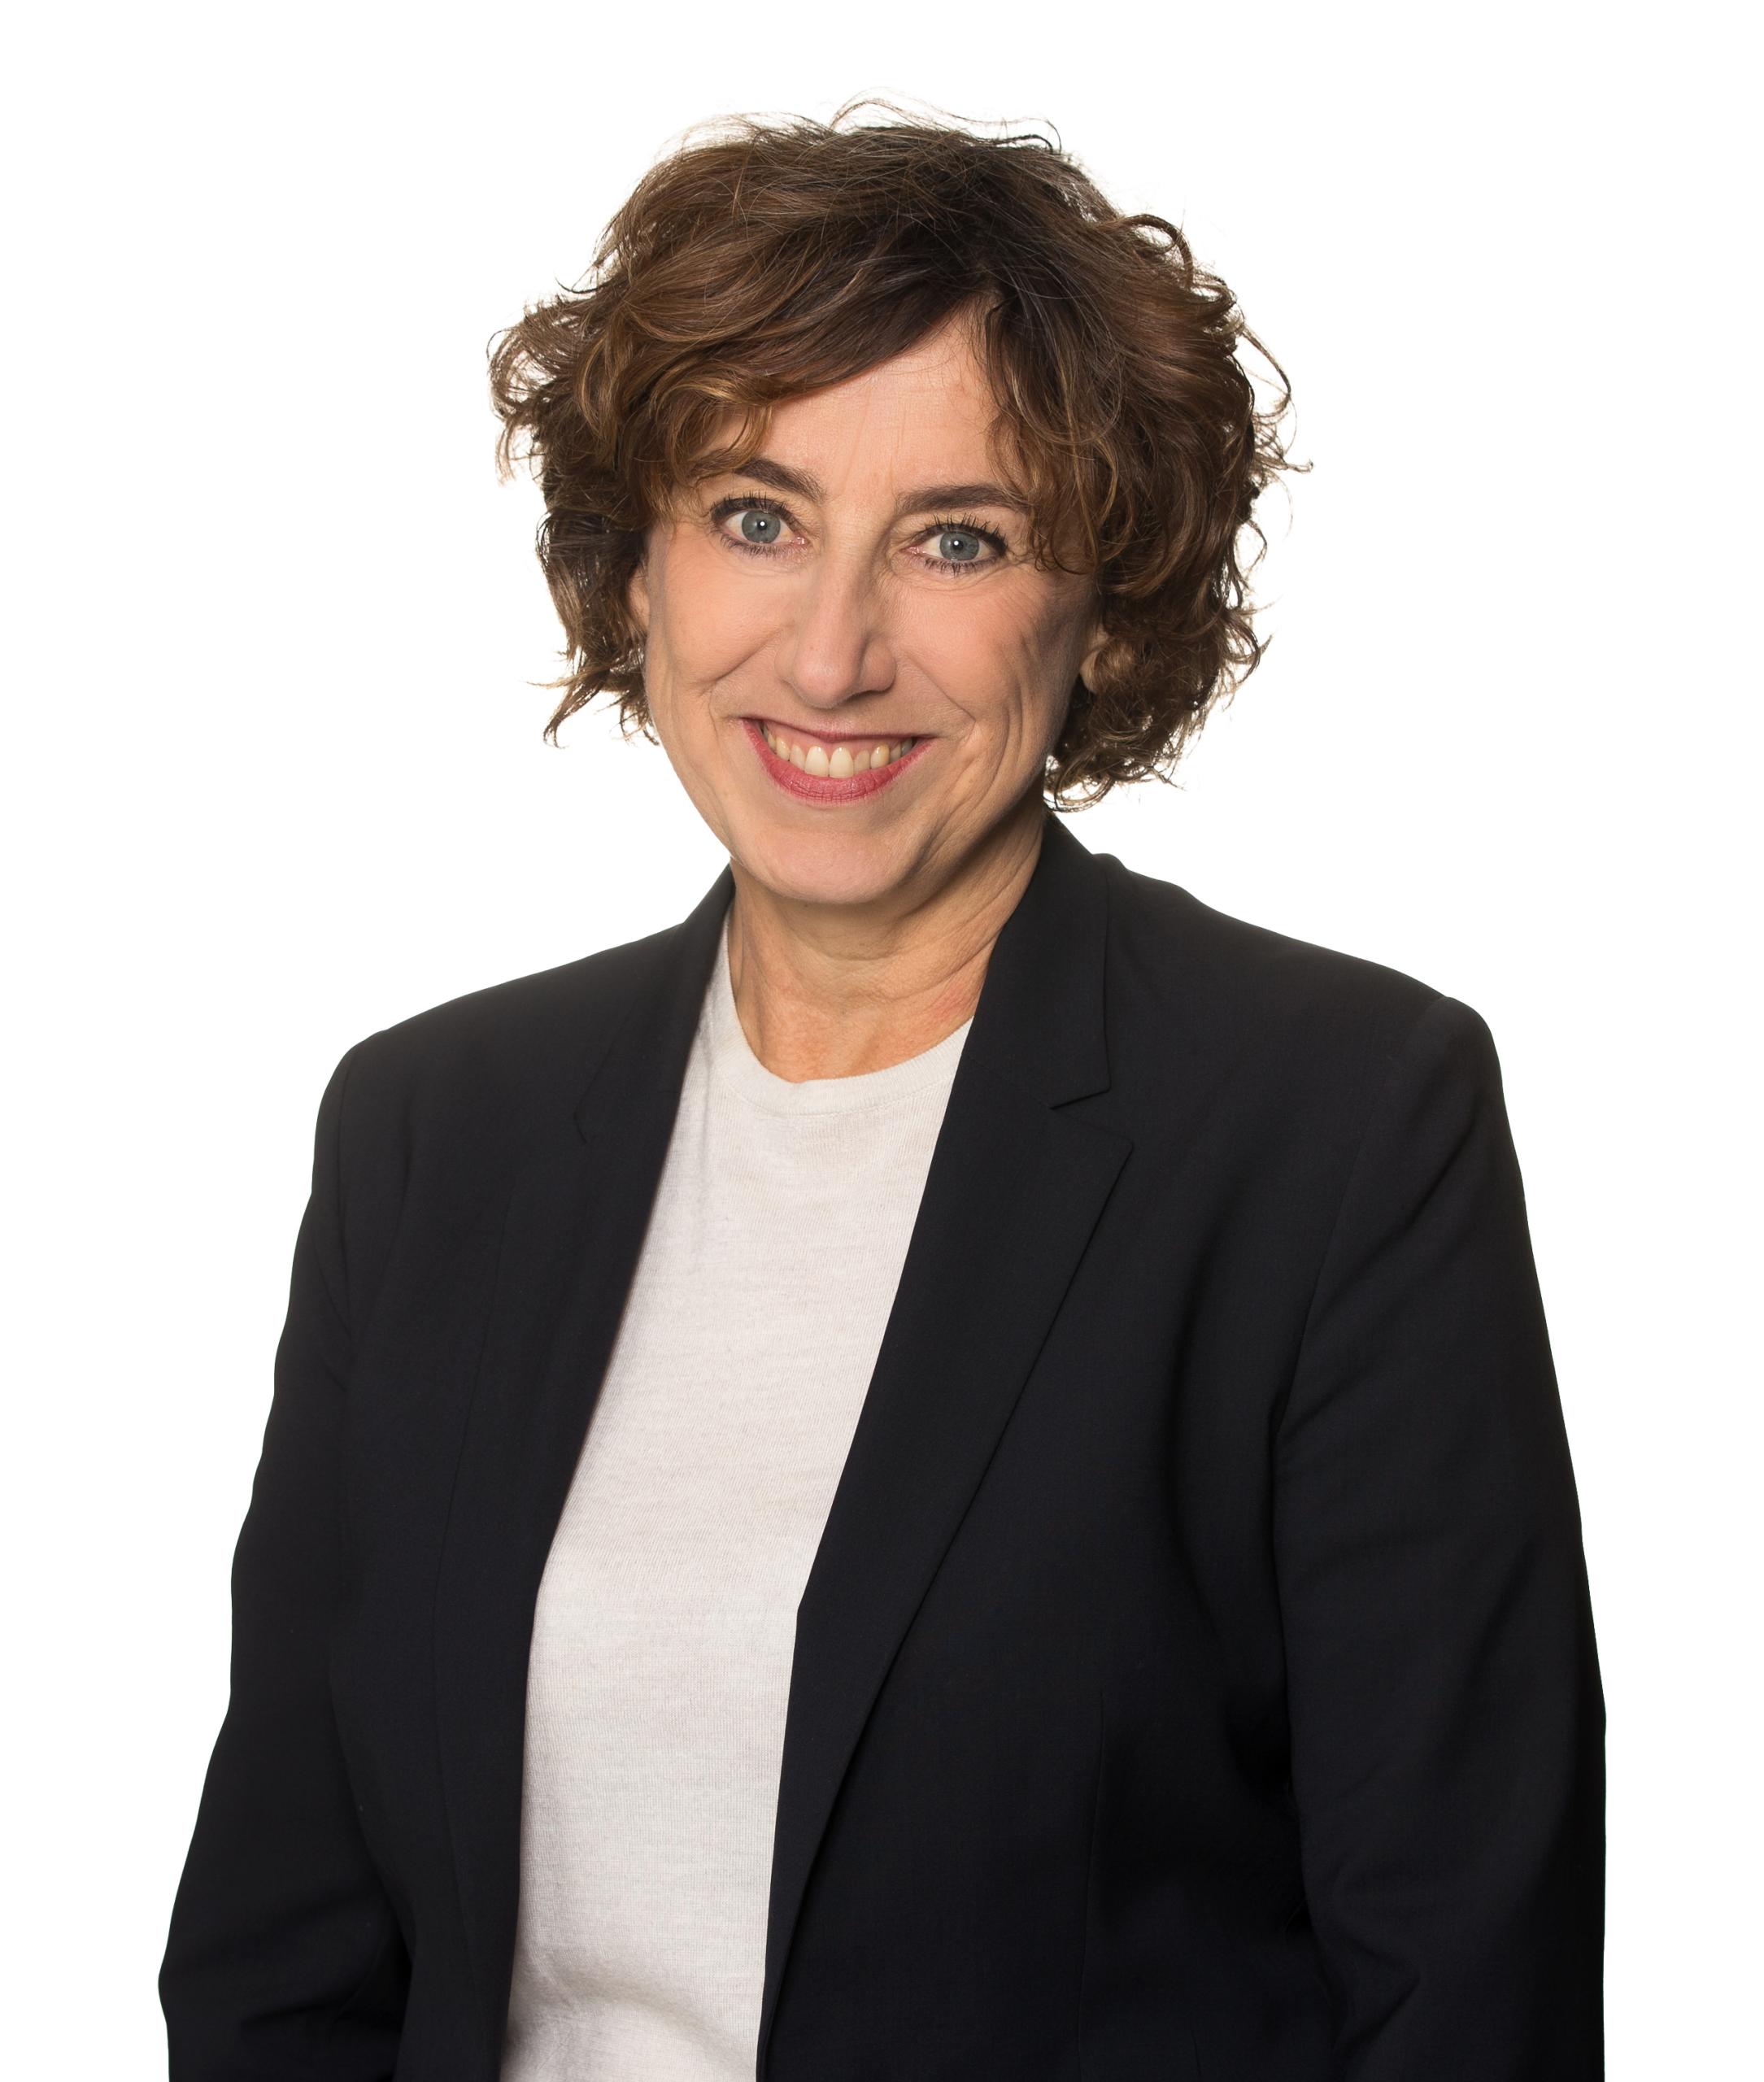 Gisele Van Kahn is de nieuwe hoofdredacteur van NOS Nieuws